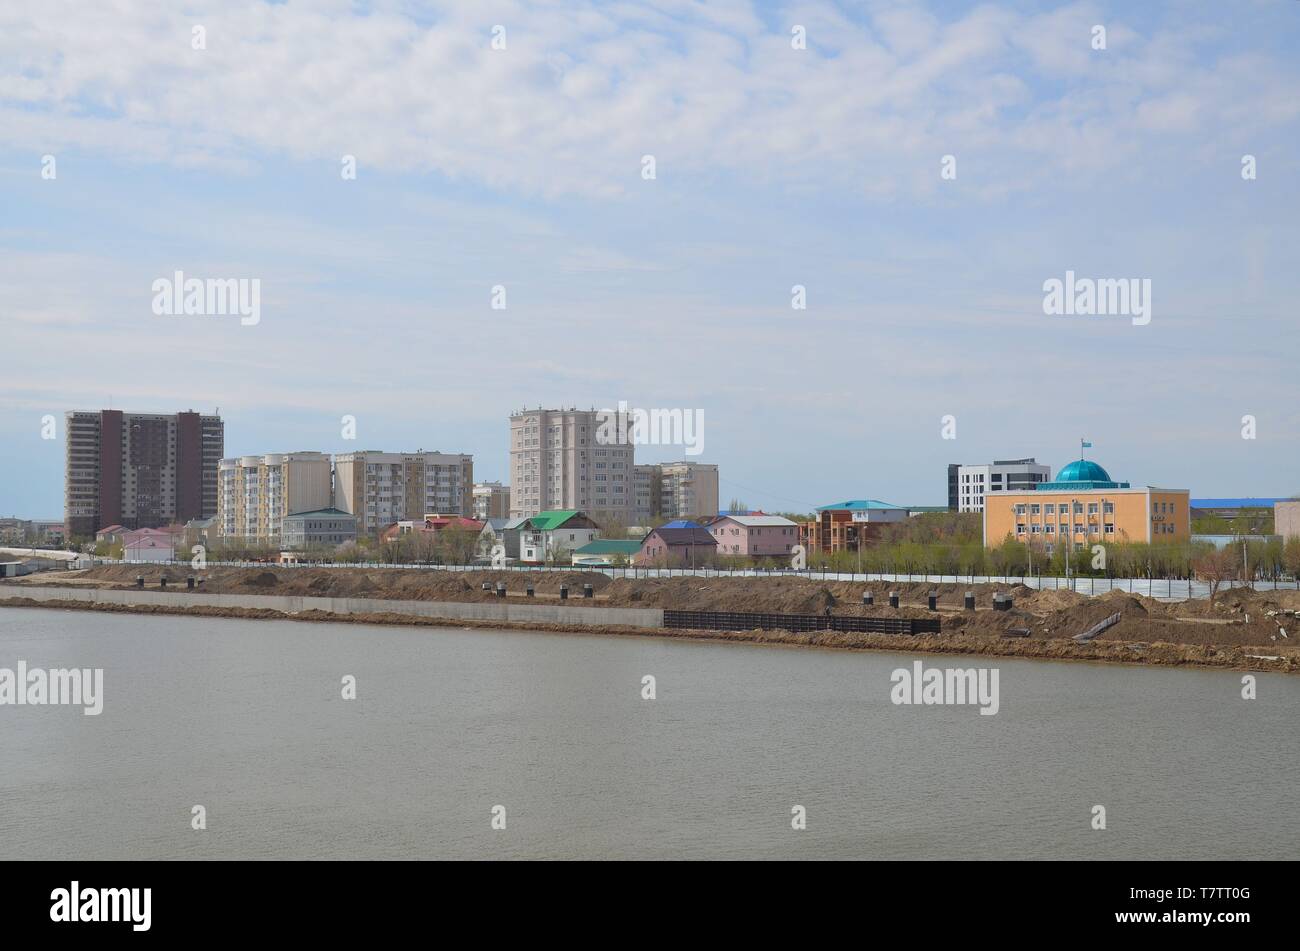 Die Stadt Atyrau dans West-Kasachstan, suis Ural, der Grenze zwischen Europa und asien : Blick von Asien nach Europa Banque D'Images